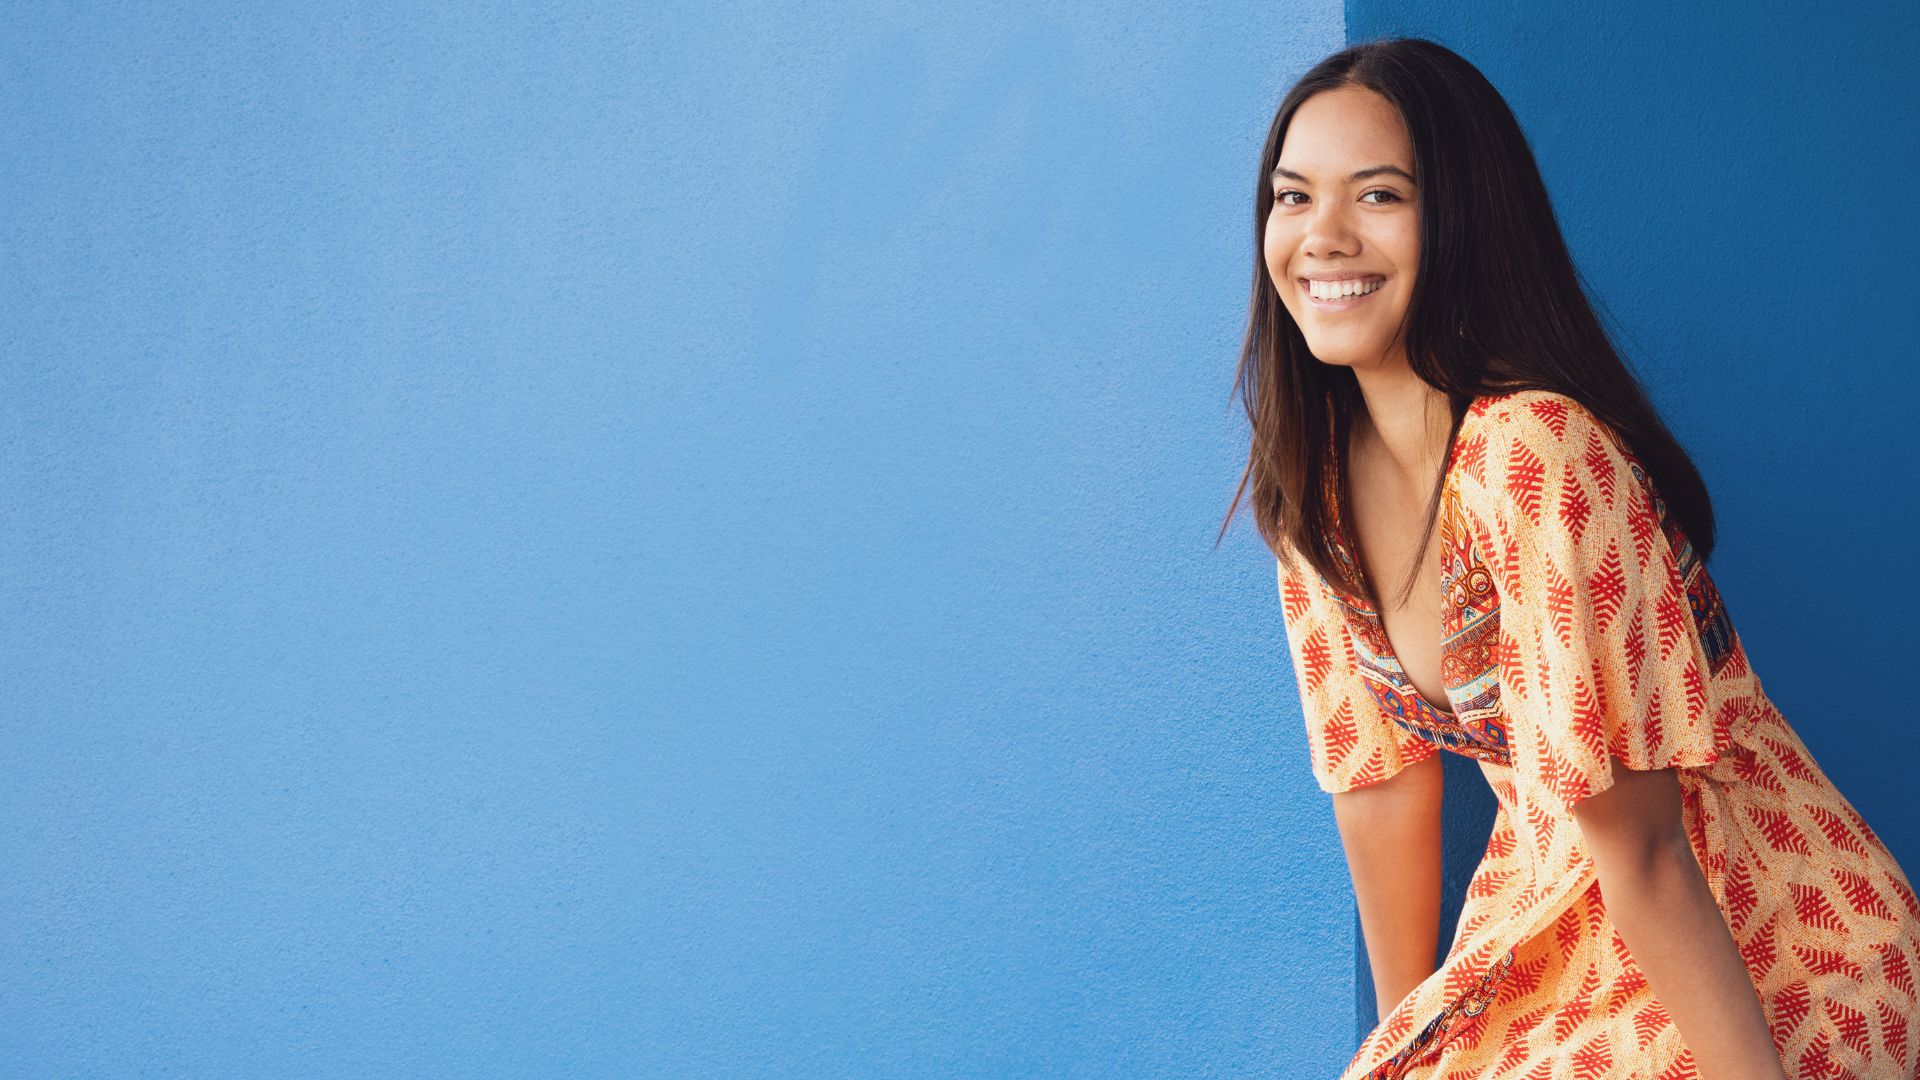 Maori woman smiles against a blue wall